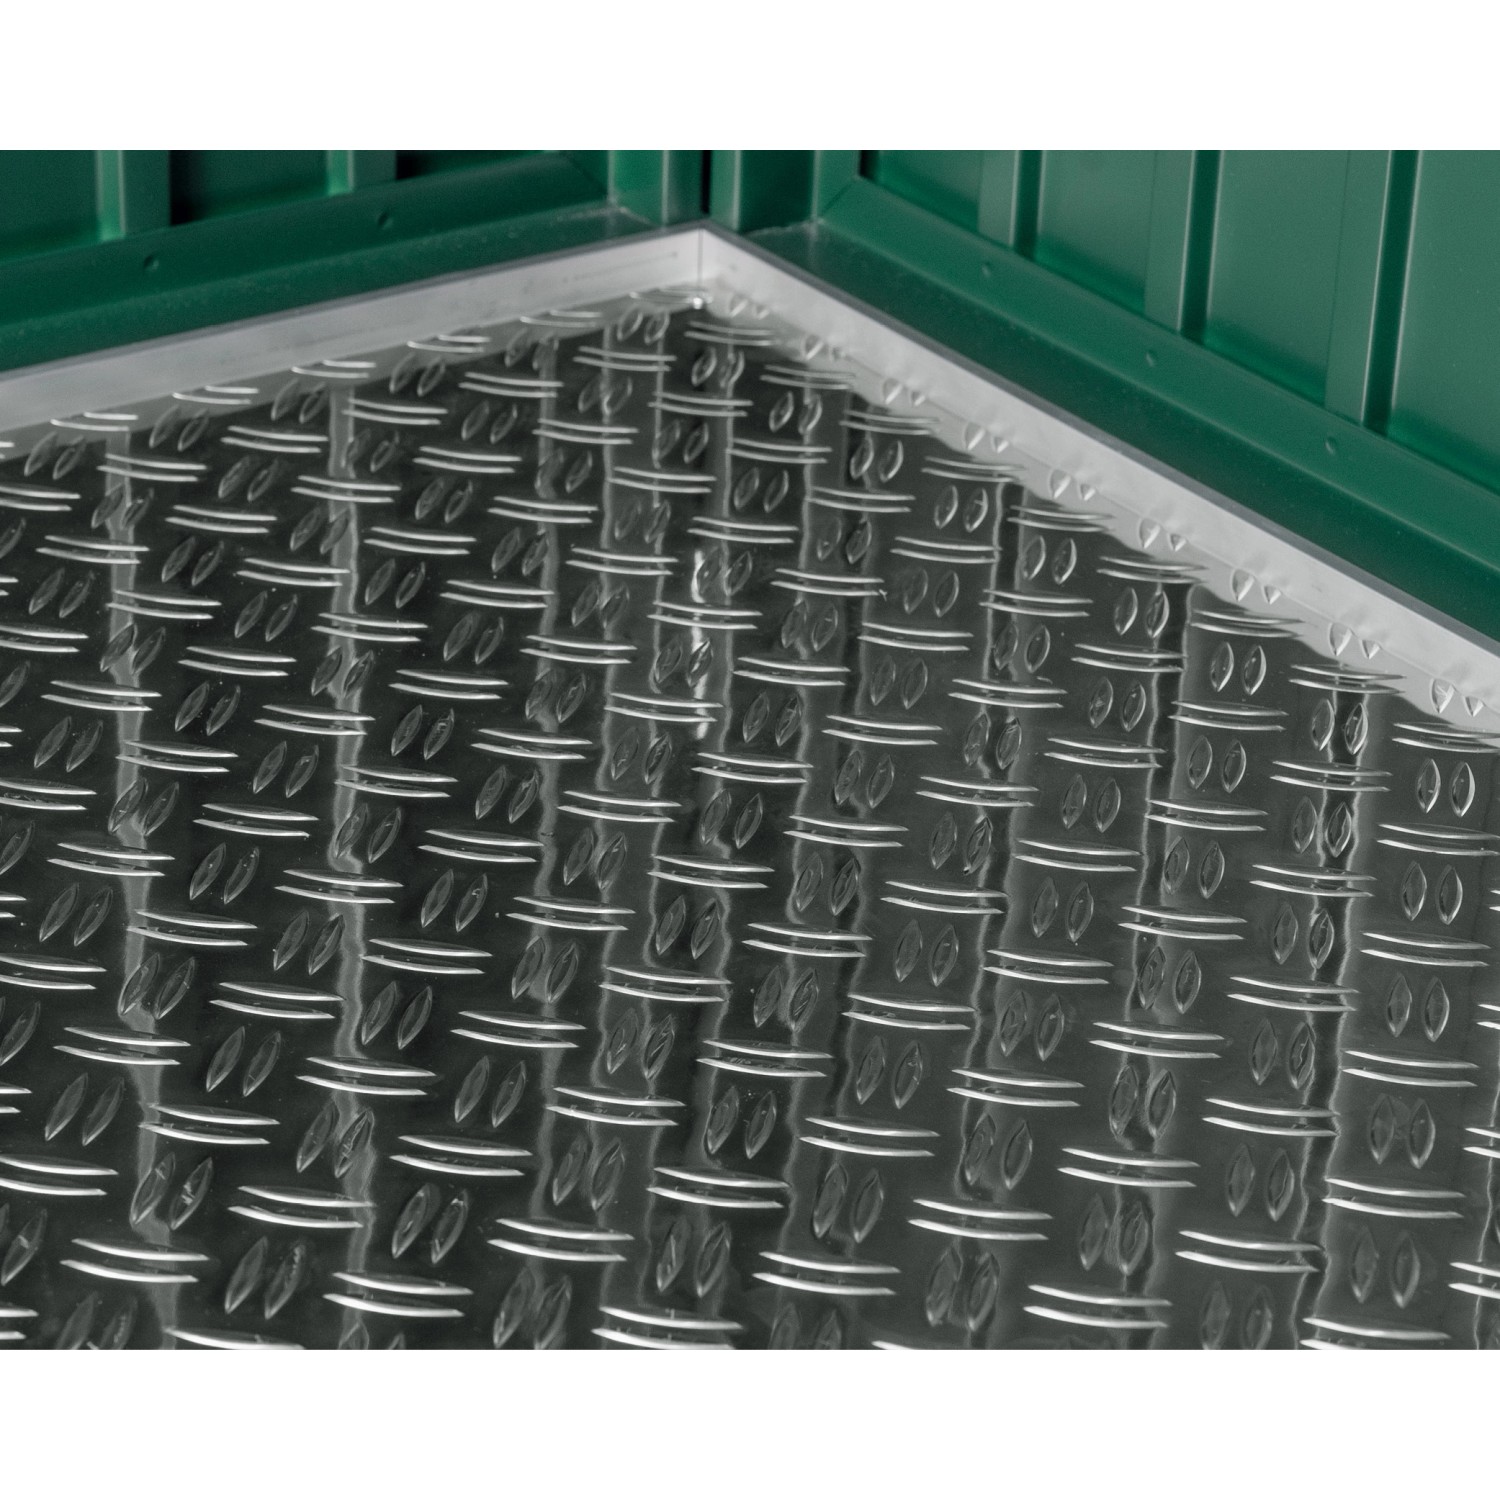 EcoStar Aluminium-Riffelblechboden für das Gerätehaus Typ 2